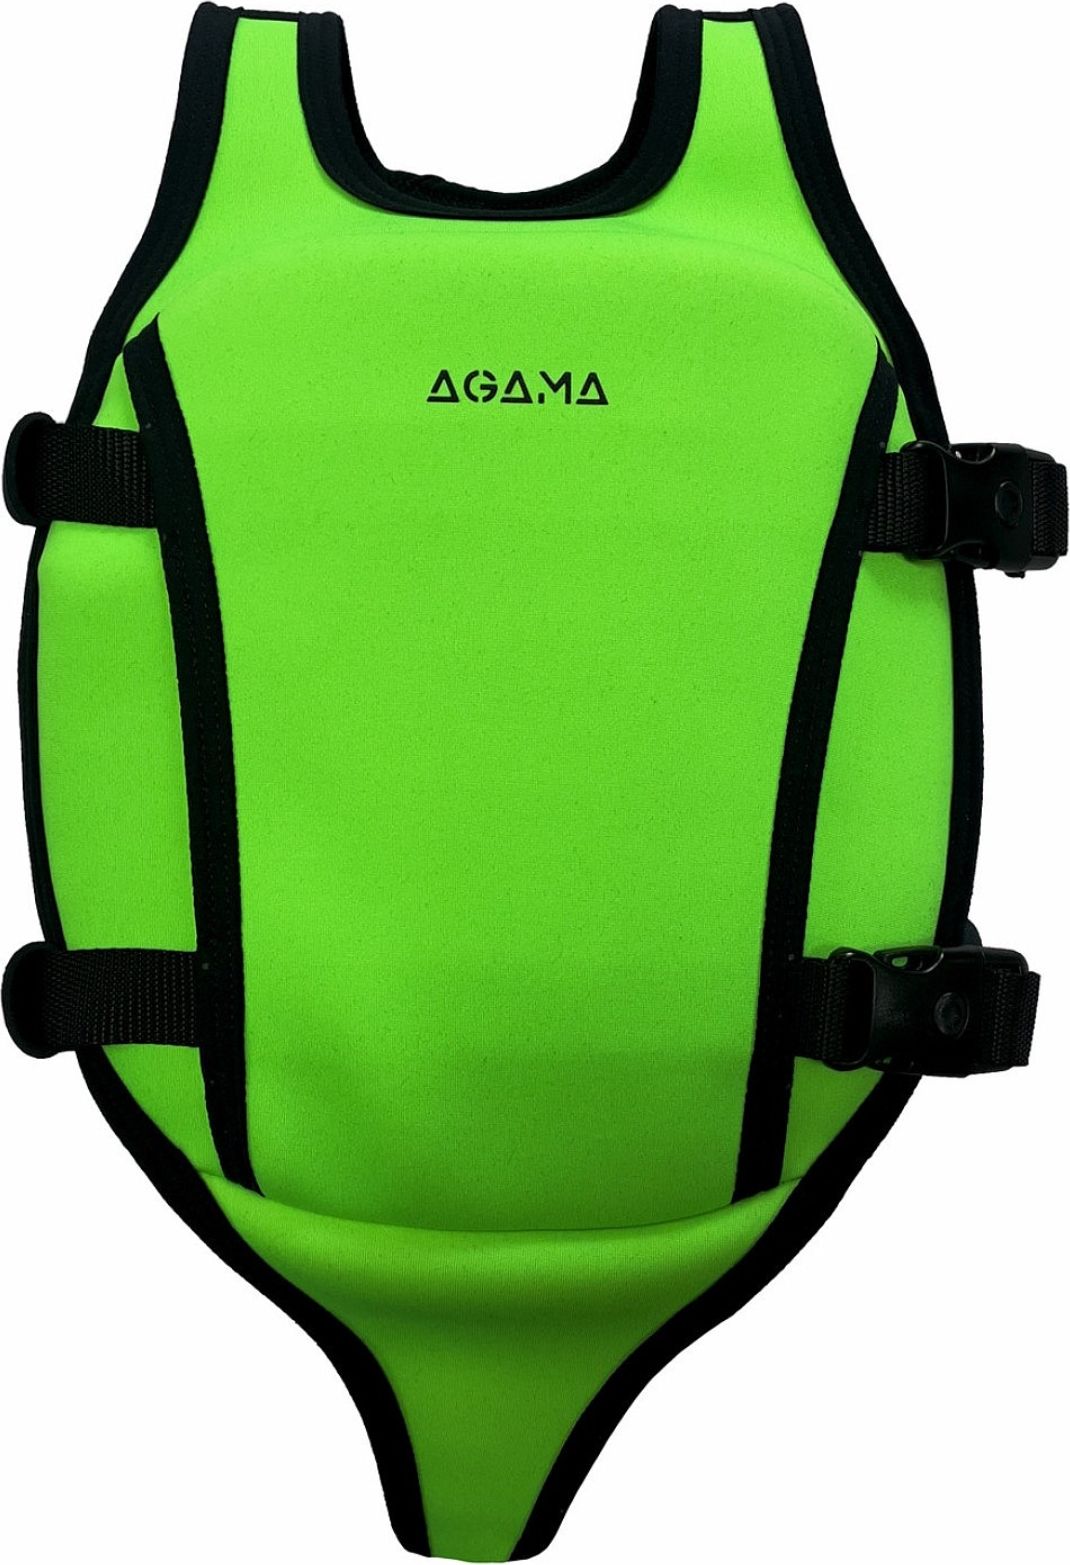 Plovací vesta AGAMA dětská zelená 2-3 (15-18 kg) - obrázek 1